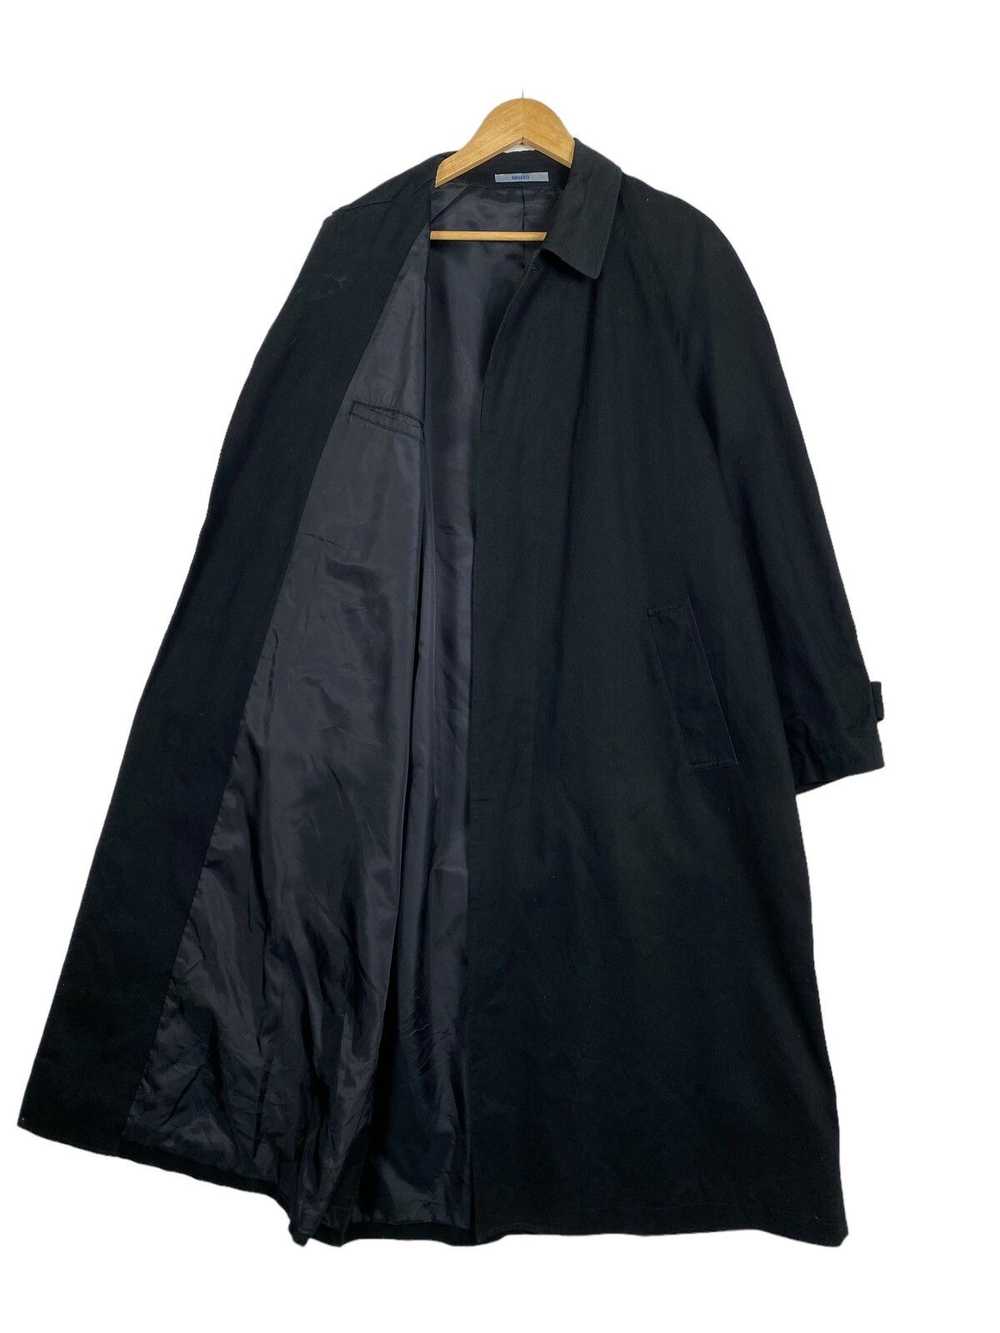 Japanese Brand × Kenzo Kenzo black trenchcoat - image 8